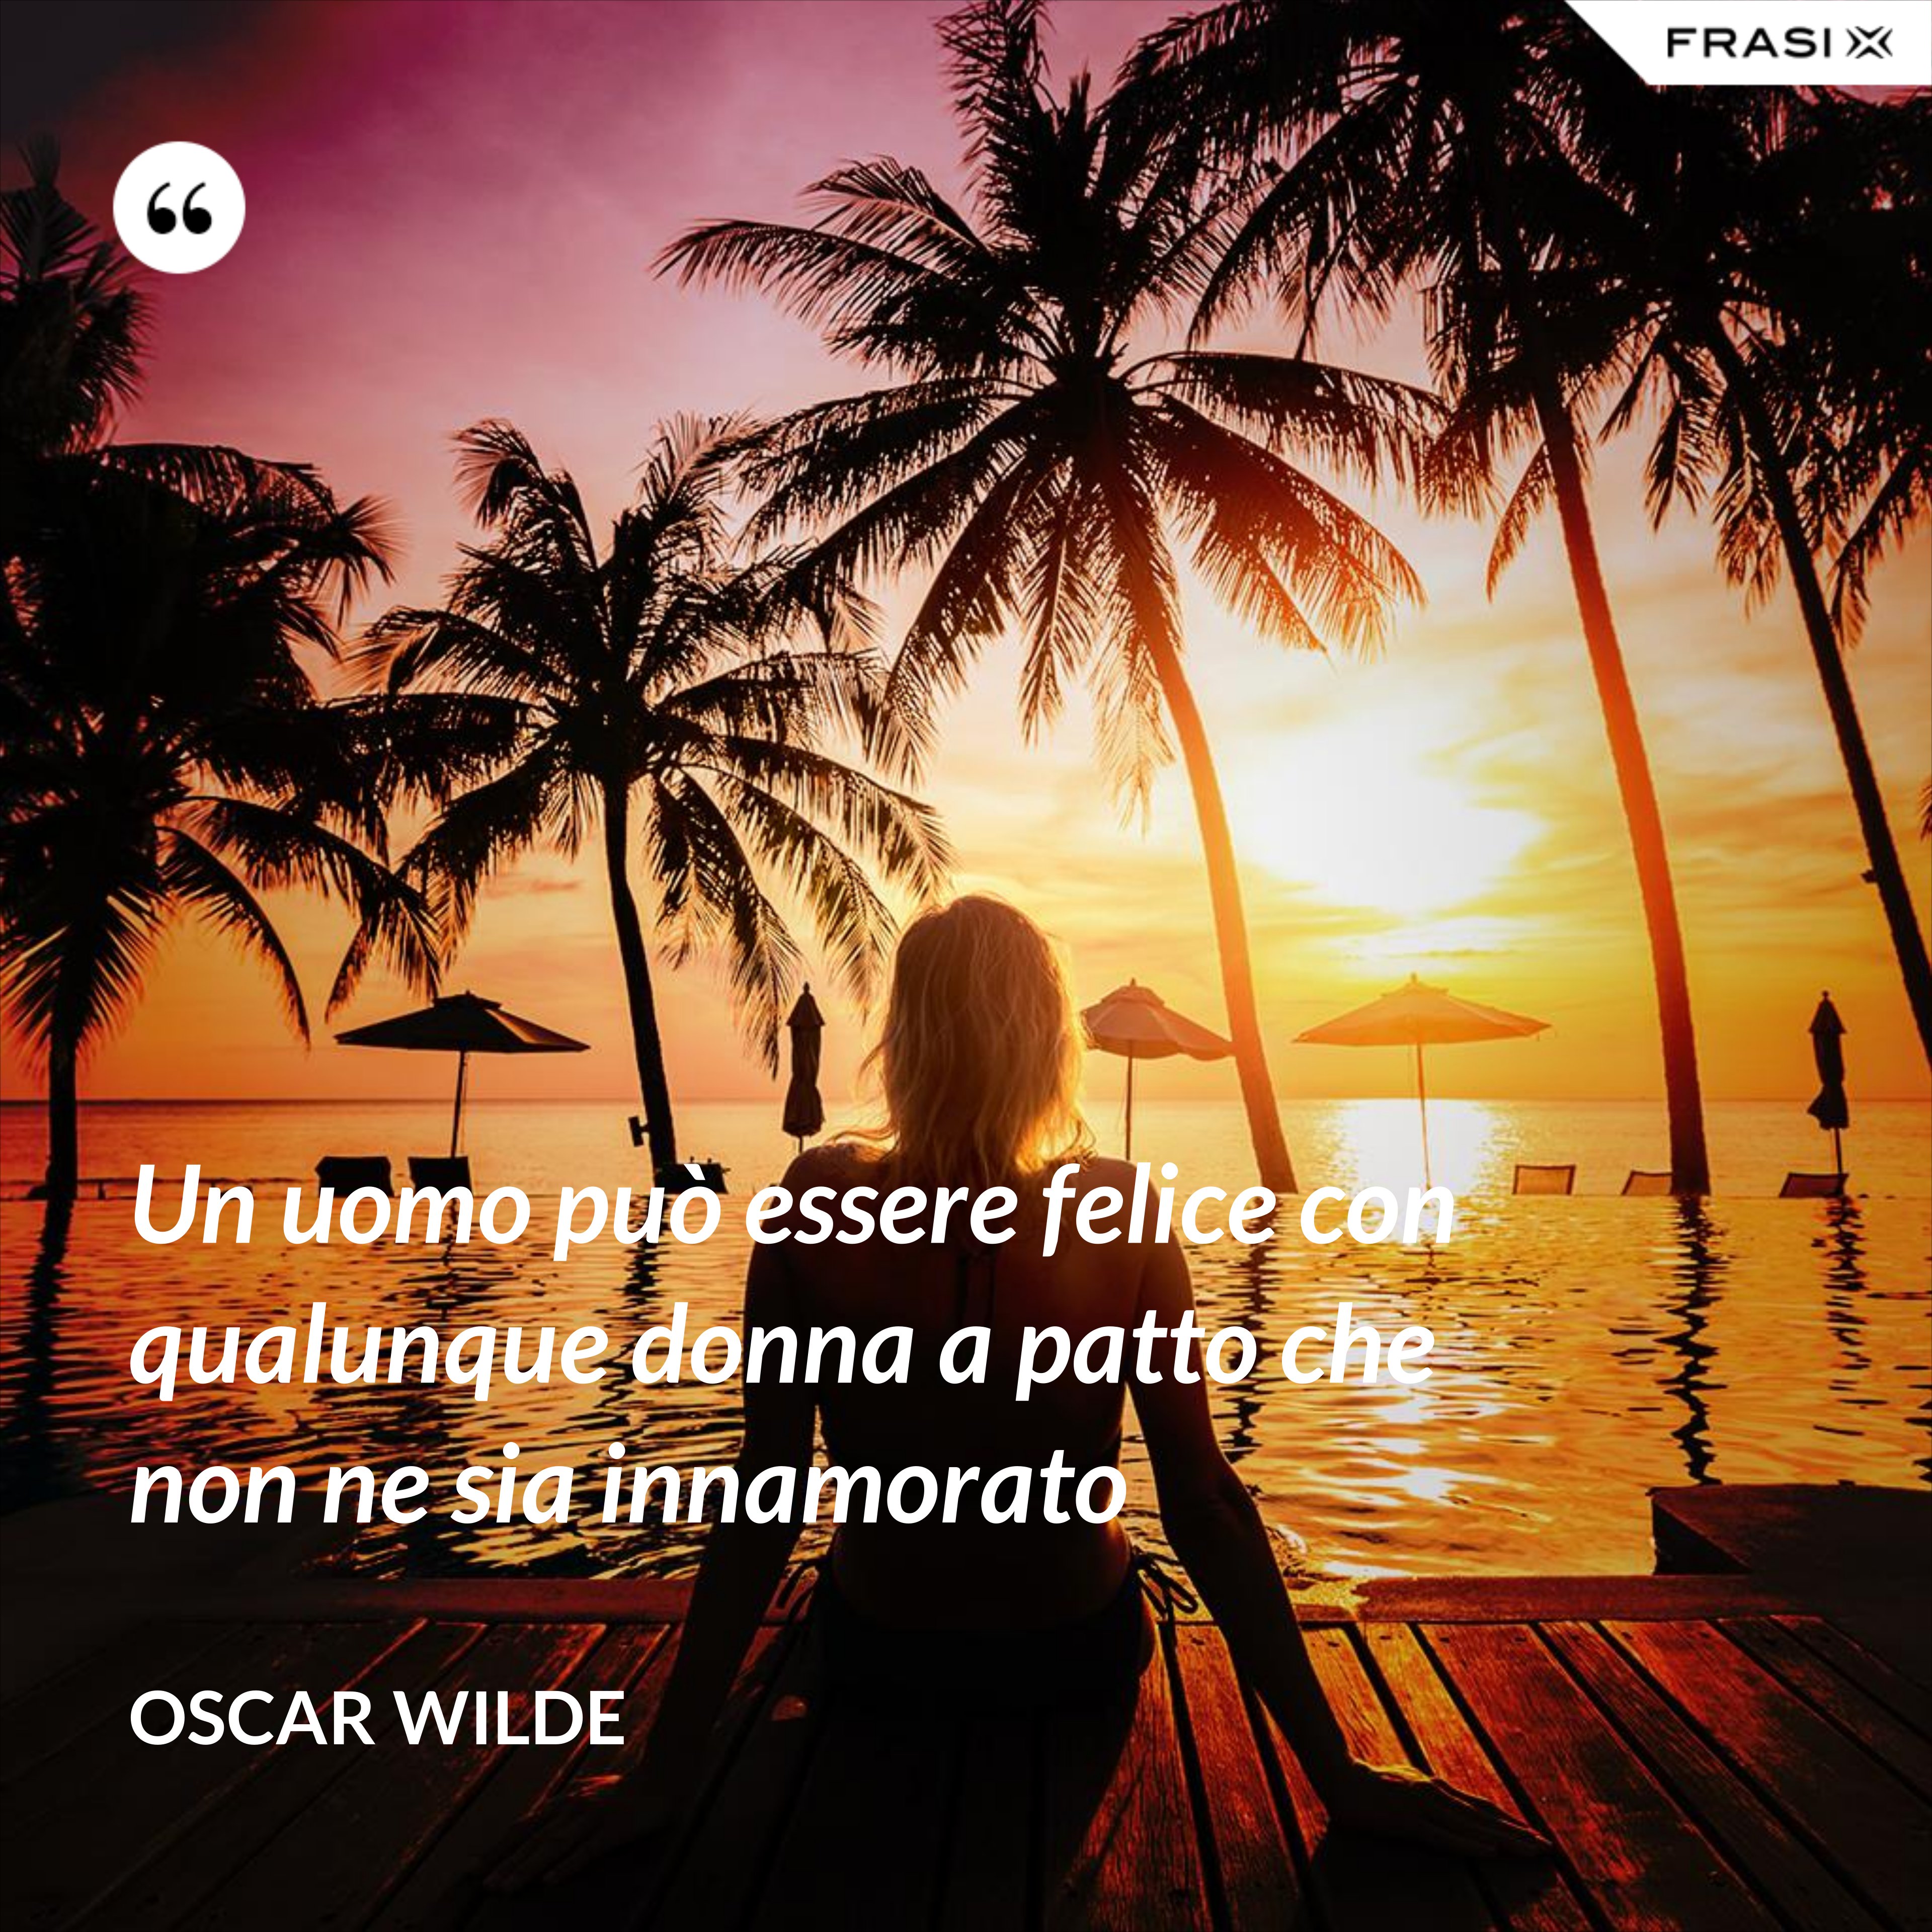 Un uomo può essere felice con qualunque donna a patto che non ne sia innamorato - Oscar Wilde